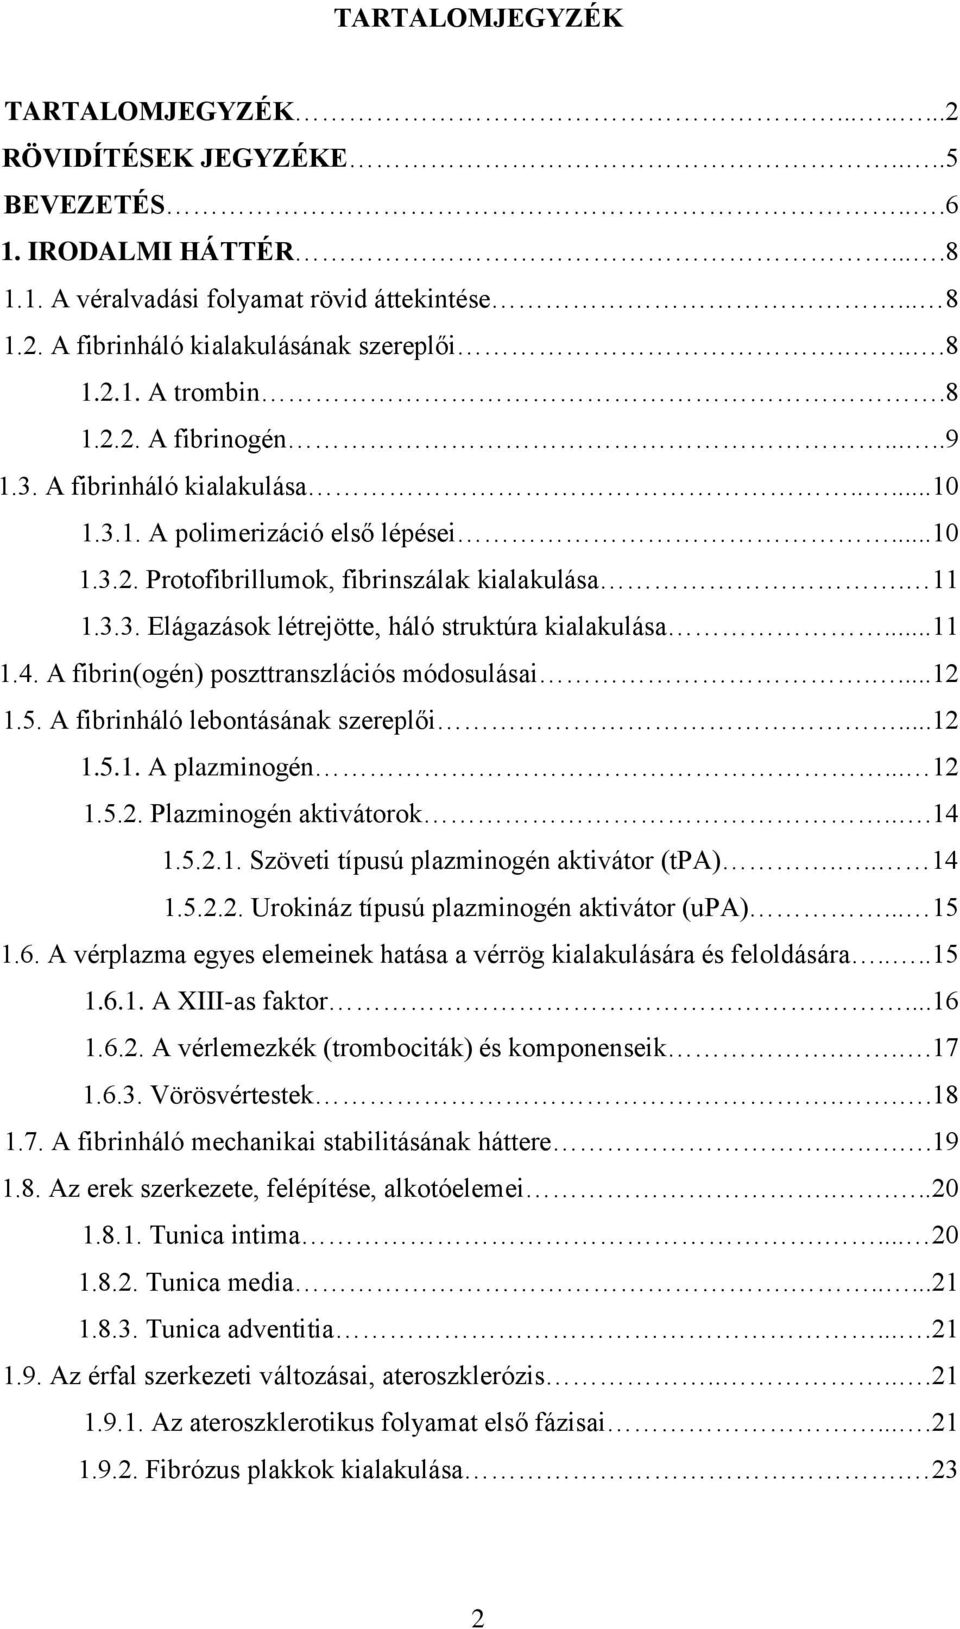 ..11 1.4. A fibrin(ogén) poszttranszlációs módosulásai....12 1.5. A fibrinháló lebontásának szereplői...12 1.5.1. A plazminogén... 12 1.5.2. Plazminogén aktivátorok...14 1.5.2.1. Szöveti típusú plazminogén aktivátor (tpa).